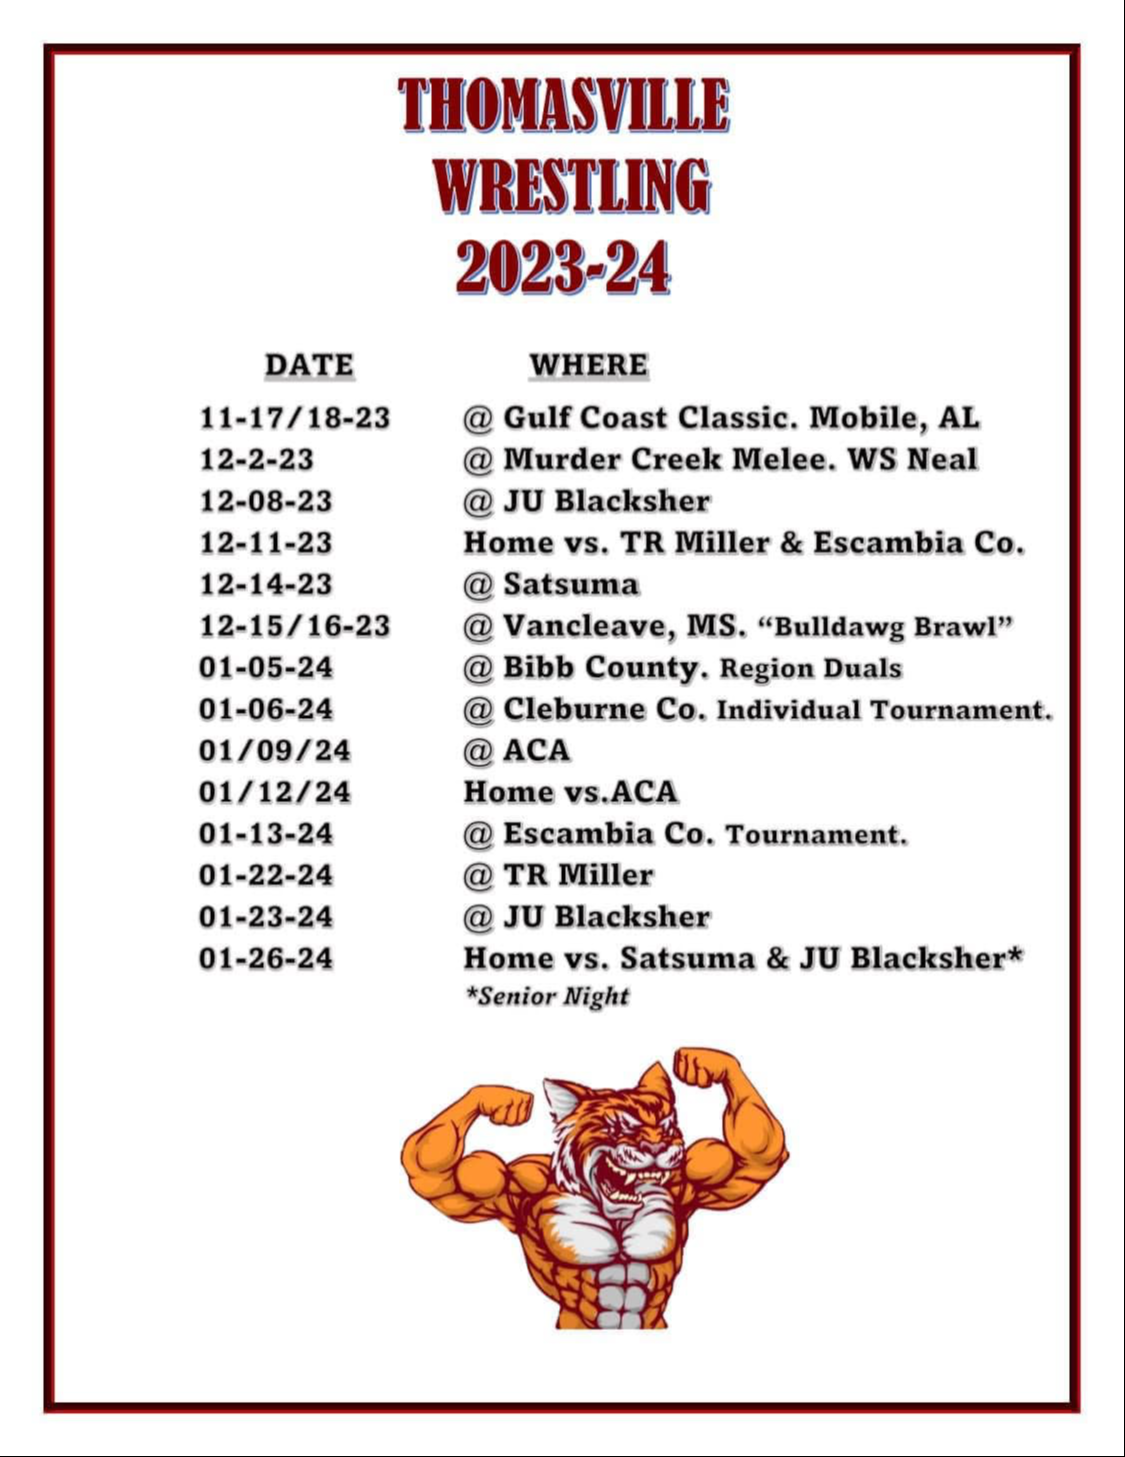 23-24 wrestling schedule